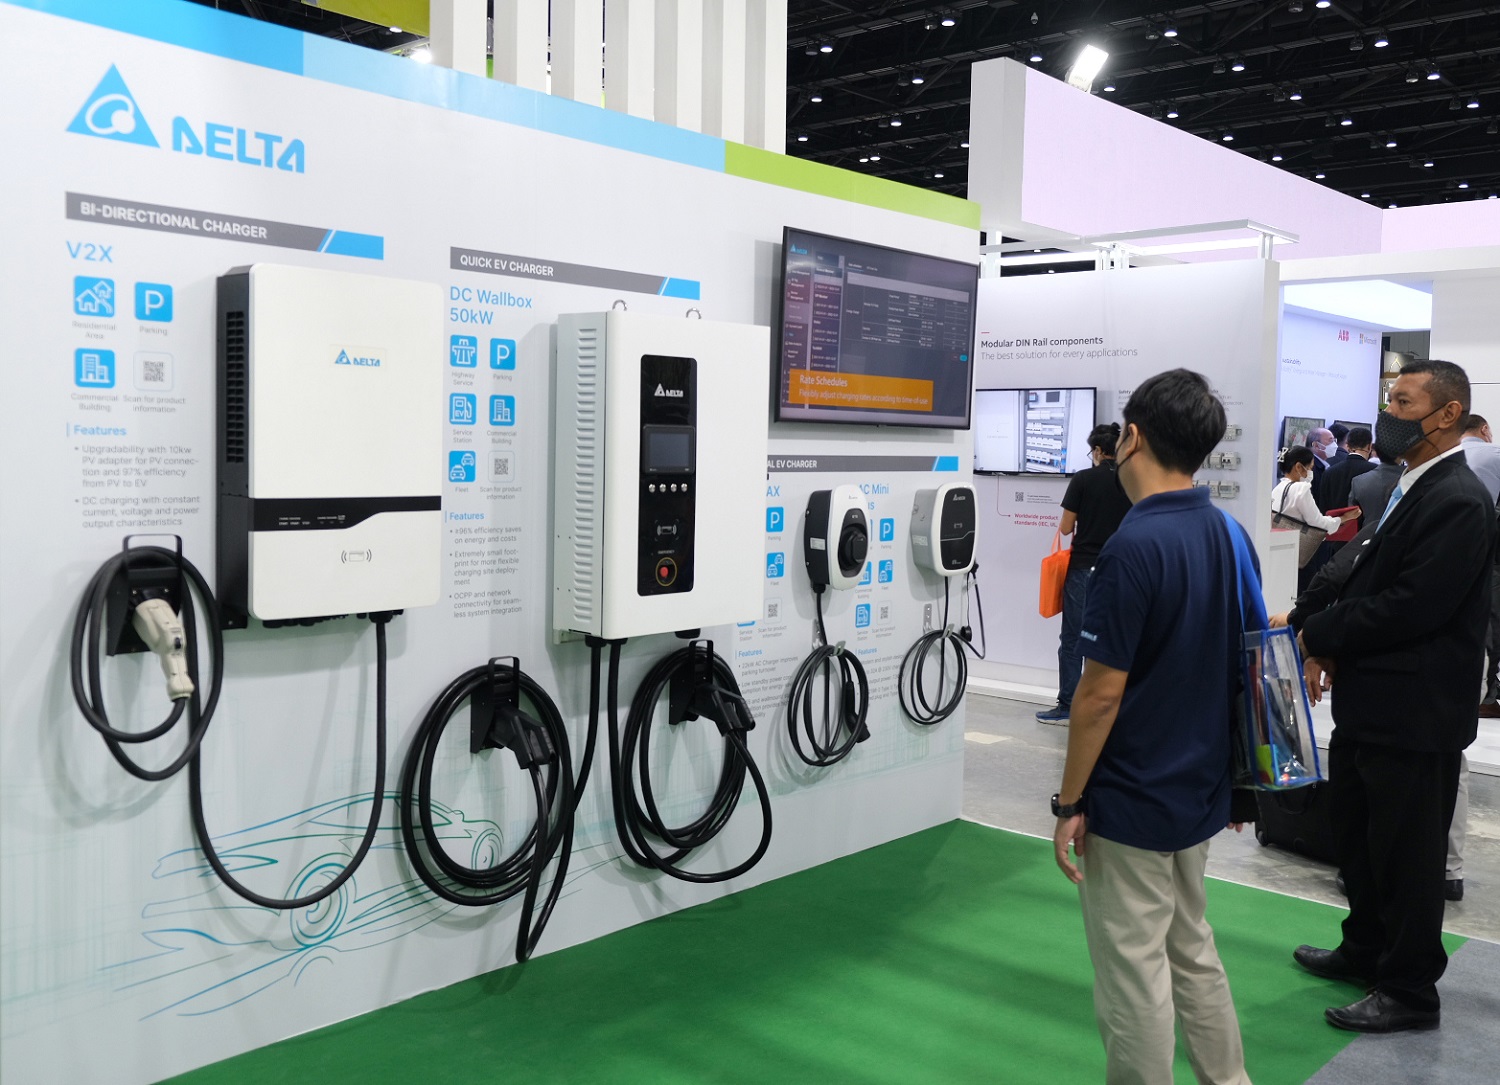 เดลต้า เปิดตัวเครื่องชาร์จรถยนต์ไฟฟ้า DC แบบเร็วรุ่นใหม่ล่าสุด และนวัตกรรม V2X รวมถึงโซลูชันด้านพลังงาน ภายในงาน ASEAN Sustainable Energy Week 2022